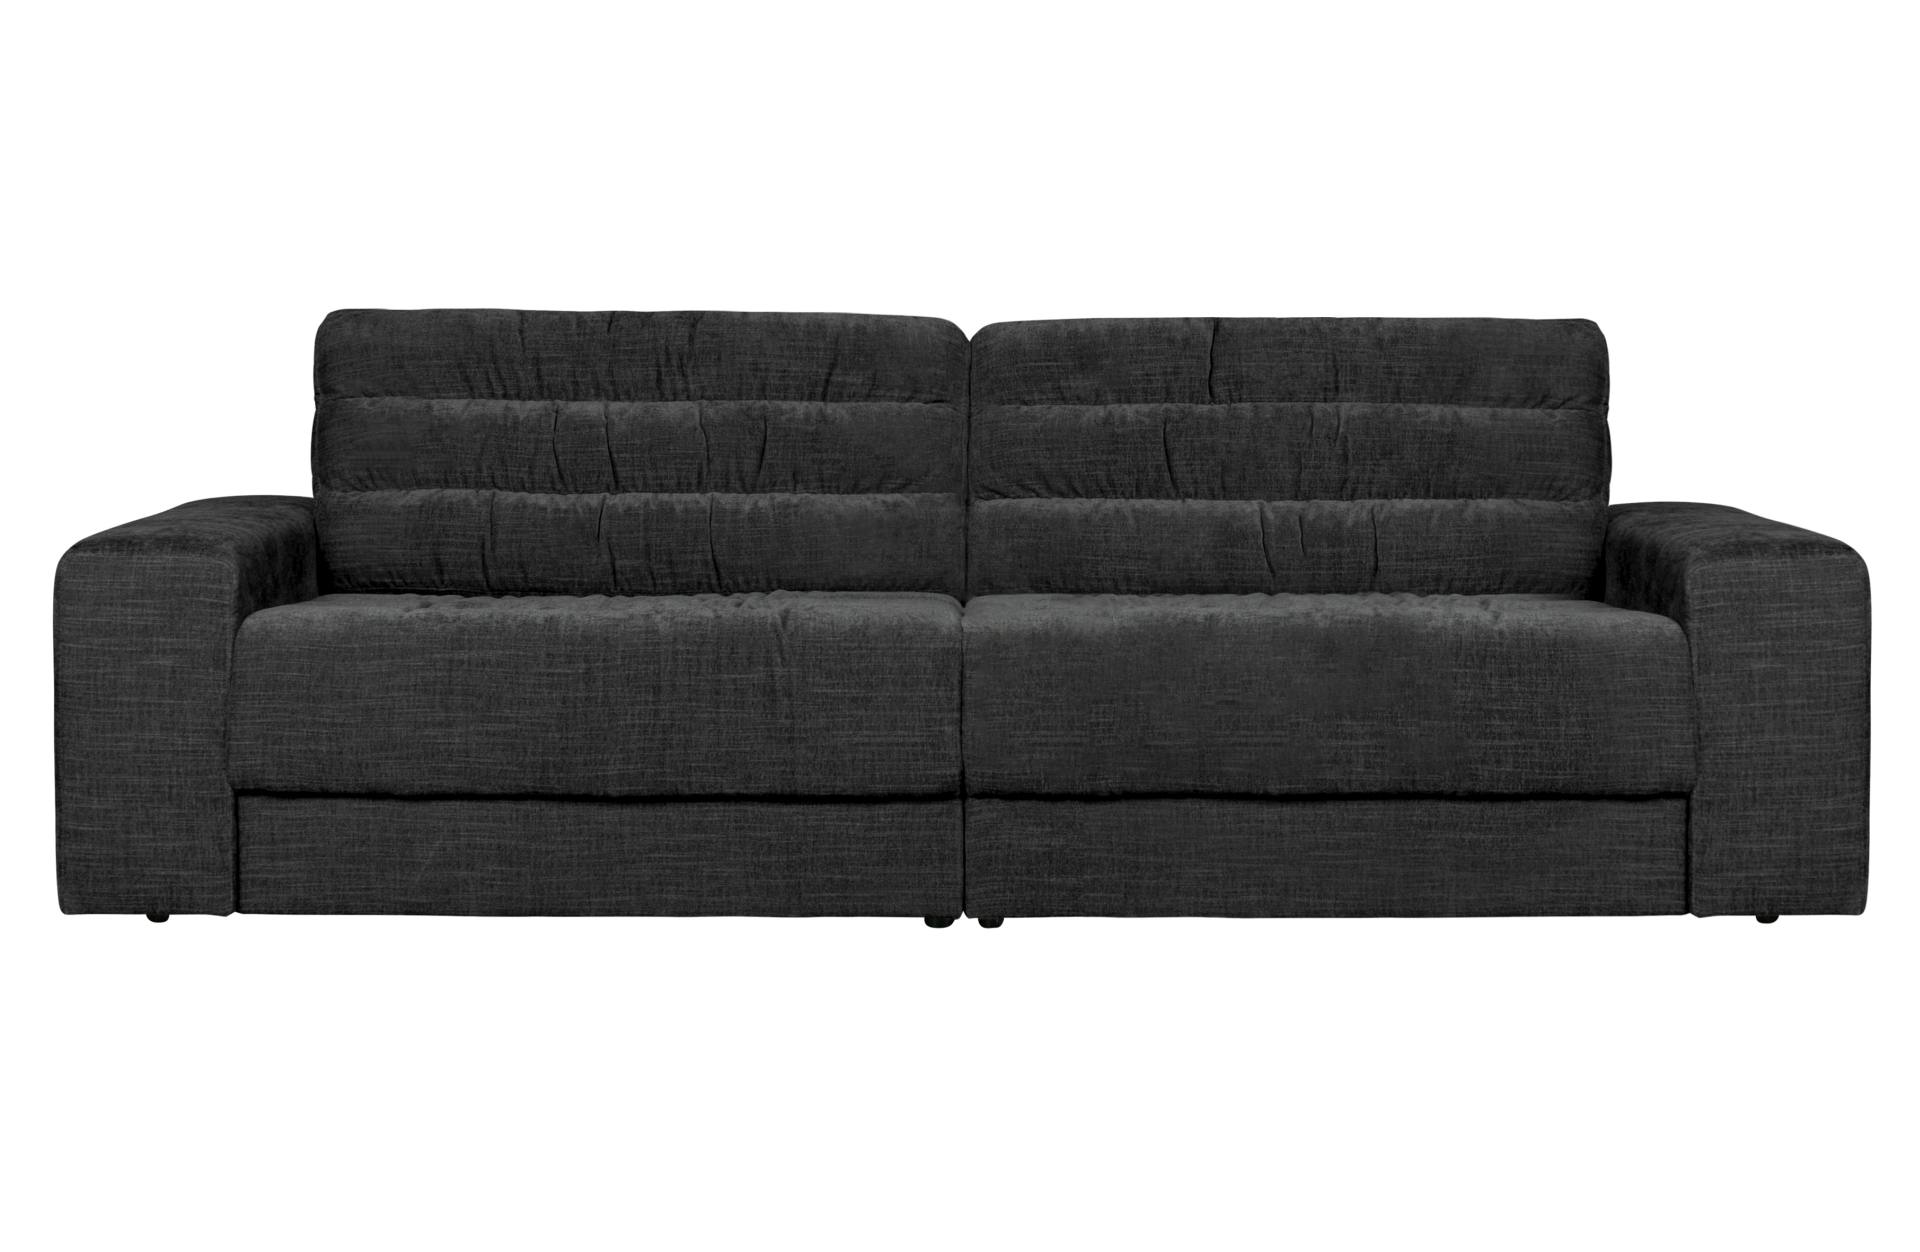 Das Sofa Date überzeugt mit seinem klassischen Design. Gefertigt wurde es aus einem Vintage Stoff, welcher einen Anthrazit Farbton besitzen. Das Gestell ist aus Kunststoff und hat eine schwarze Farbe. Das Sofa hat eine Breite von 226 cm.